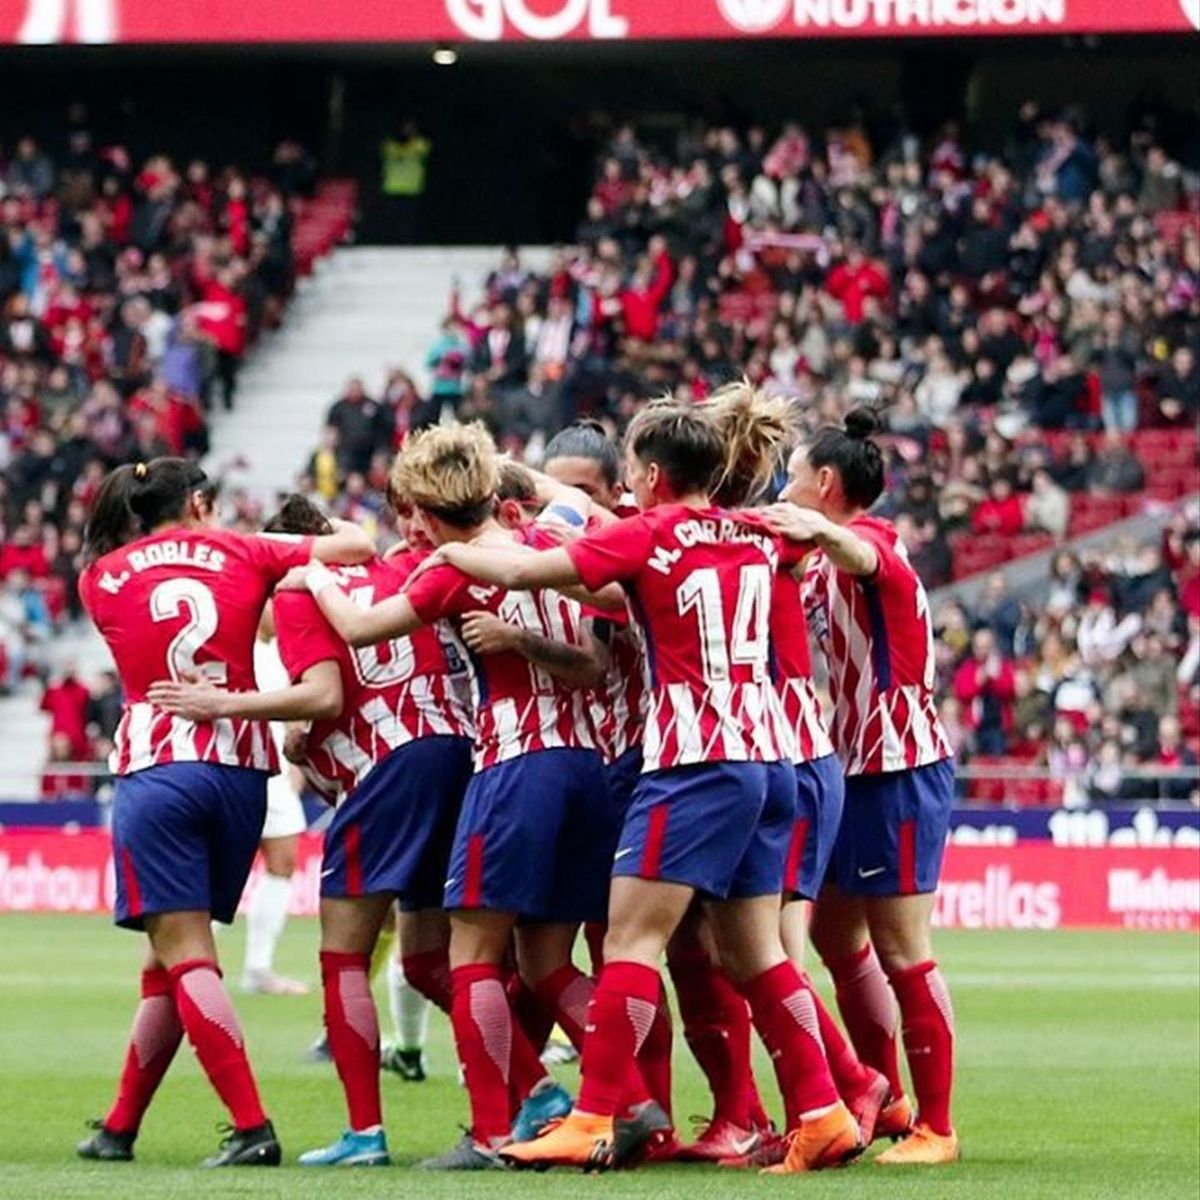 absoluto en el fútbol femenino: Más de entradas vendidas para el - Eurosport